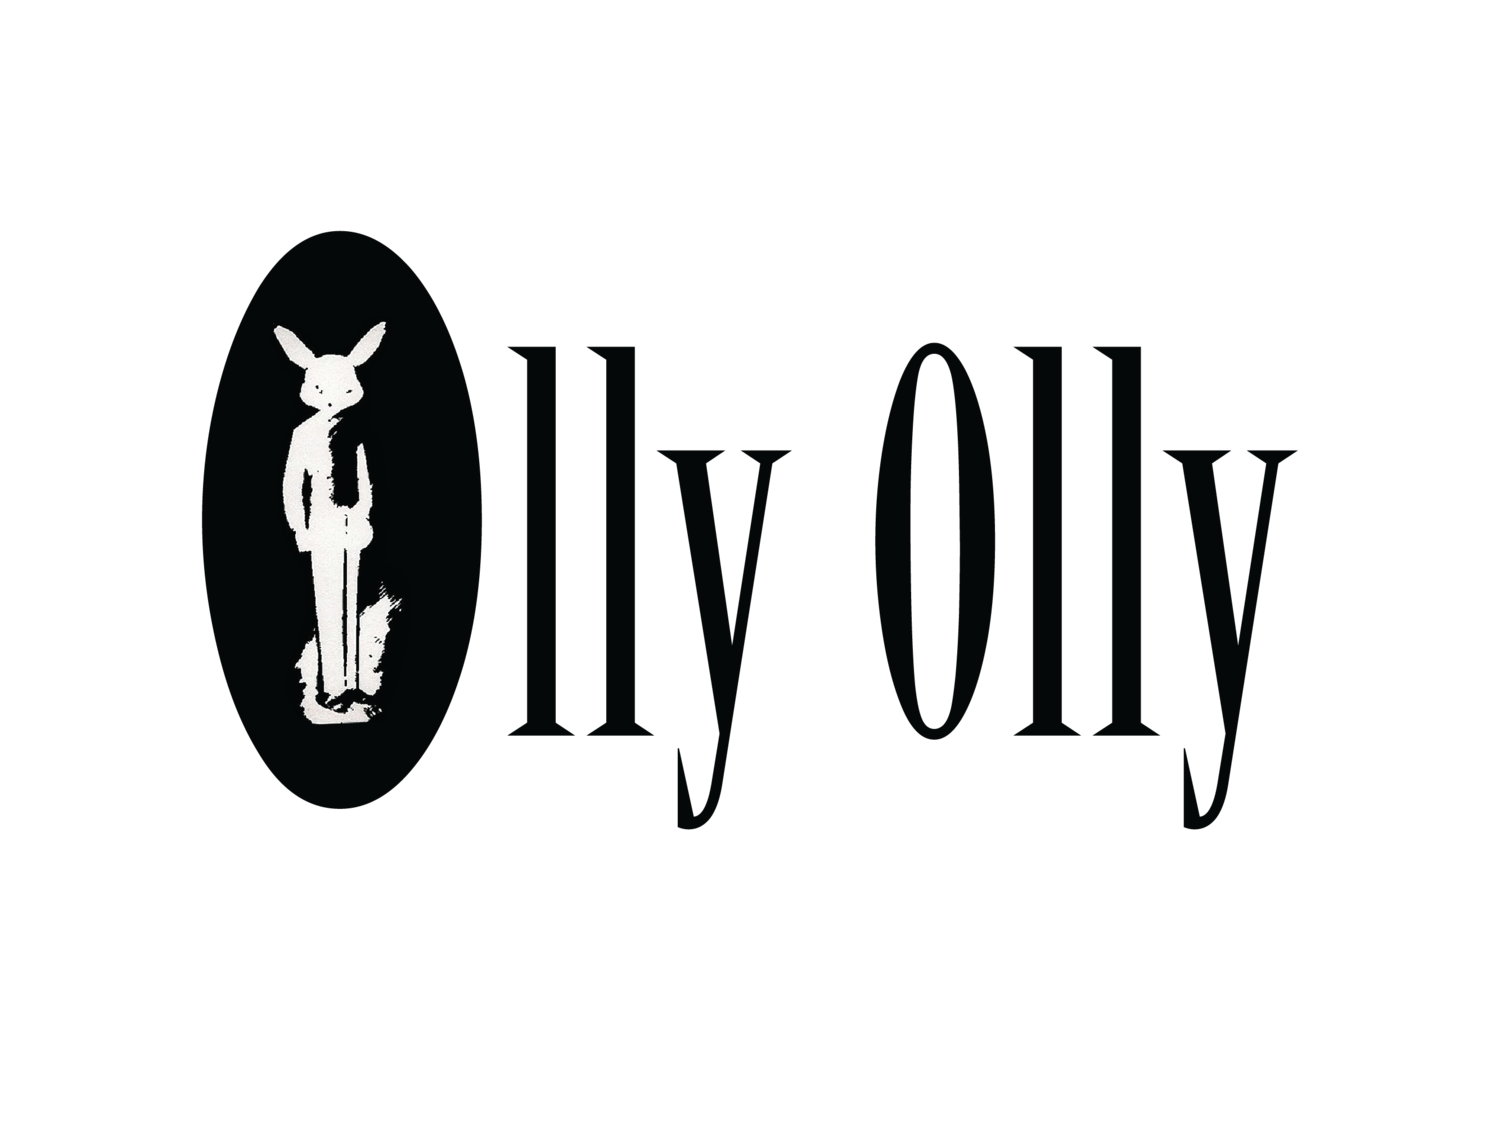 Olly Olly